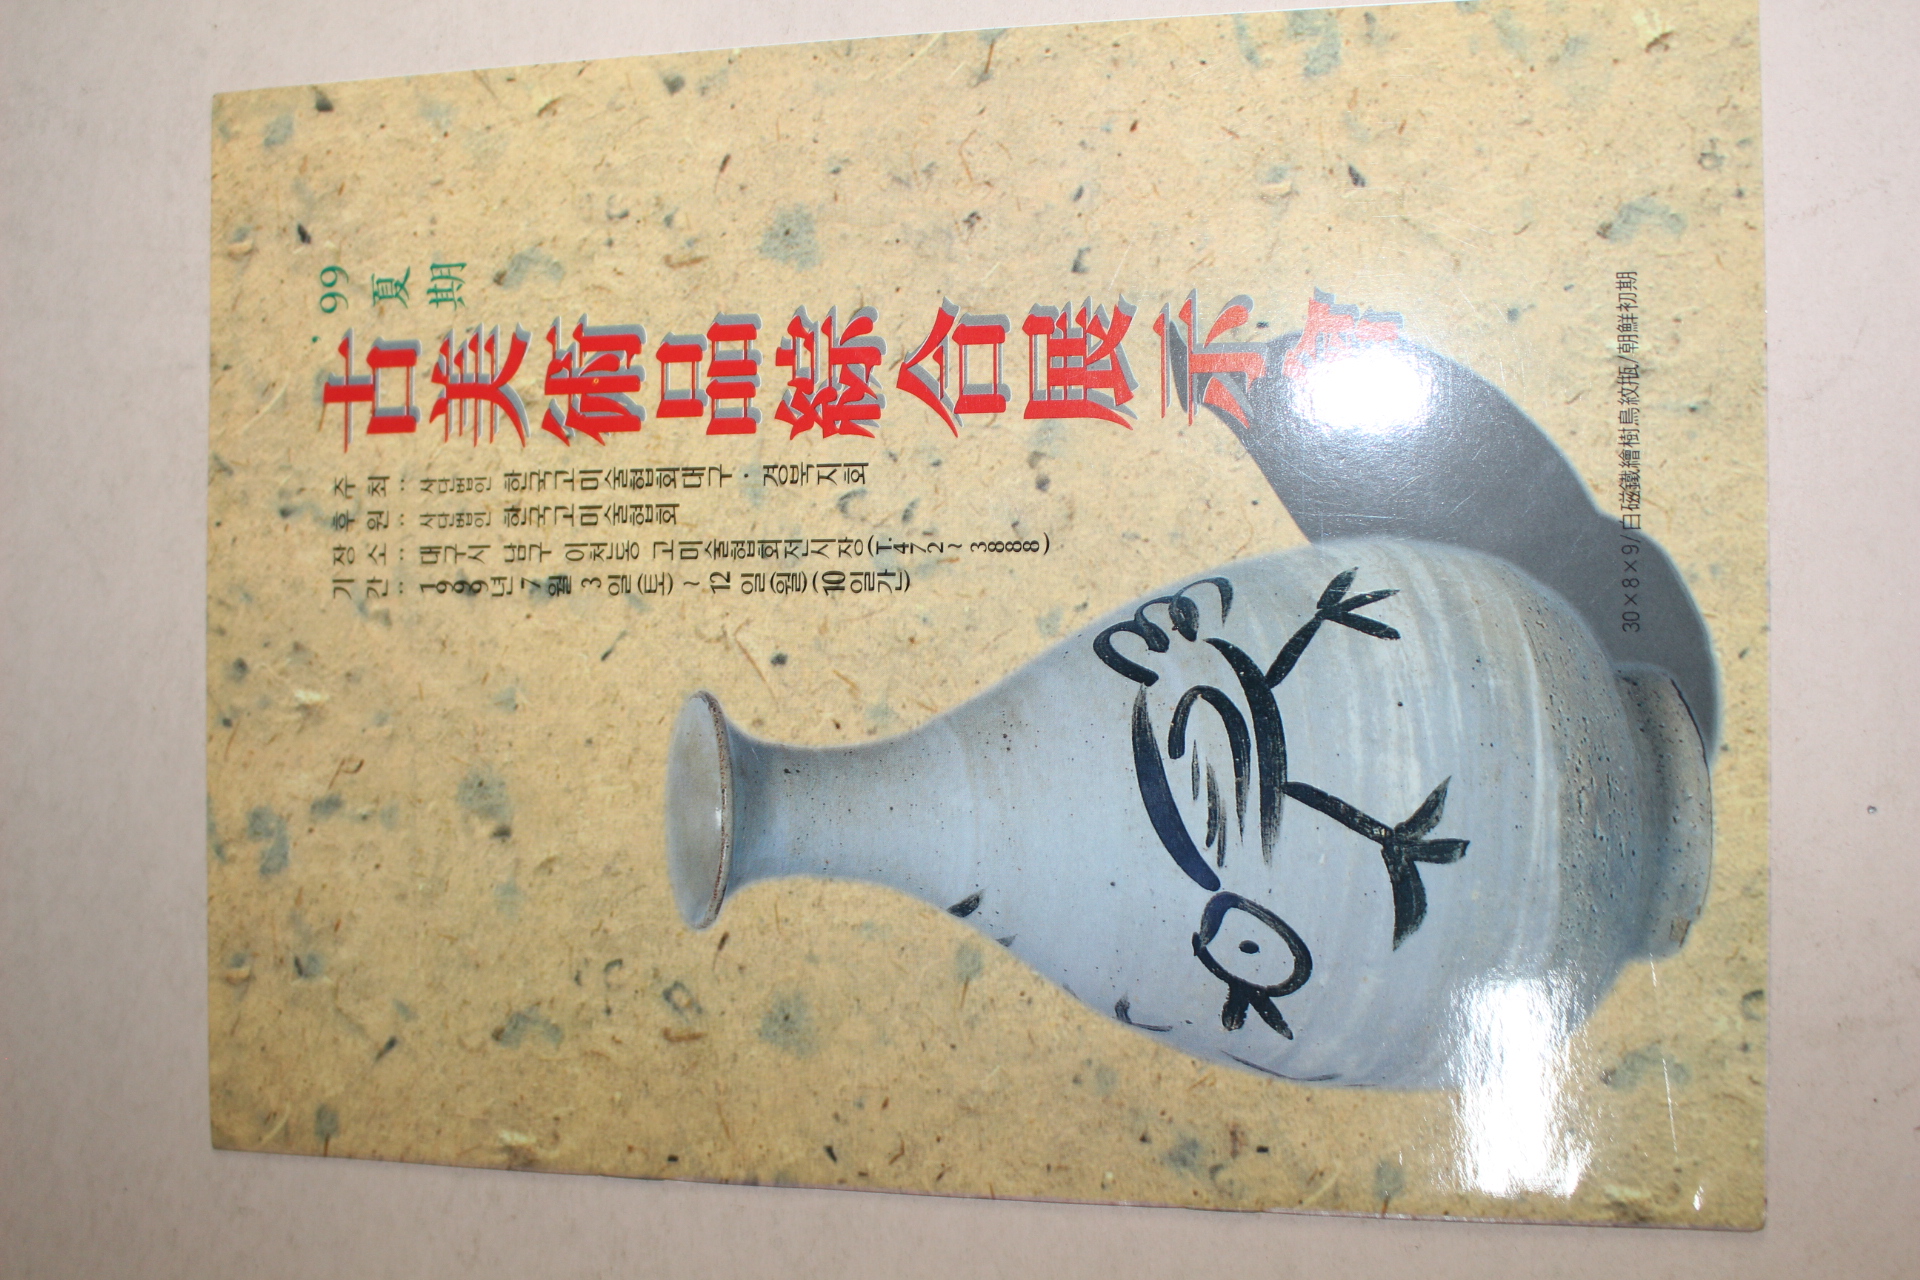 1999년 고미술품종합전시회 팜플렛